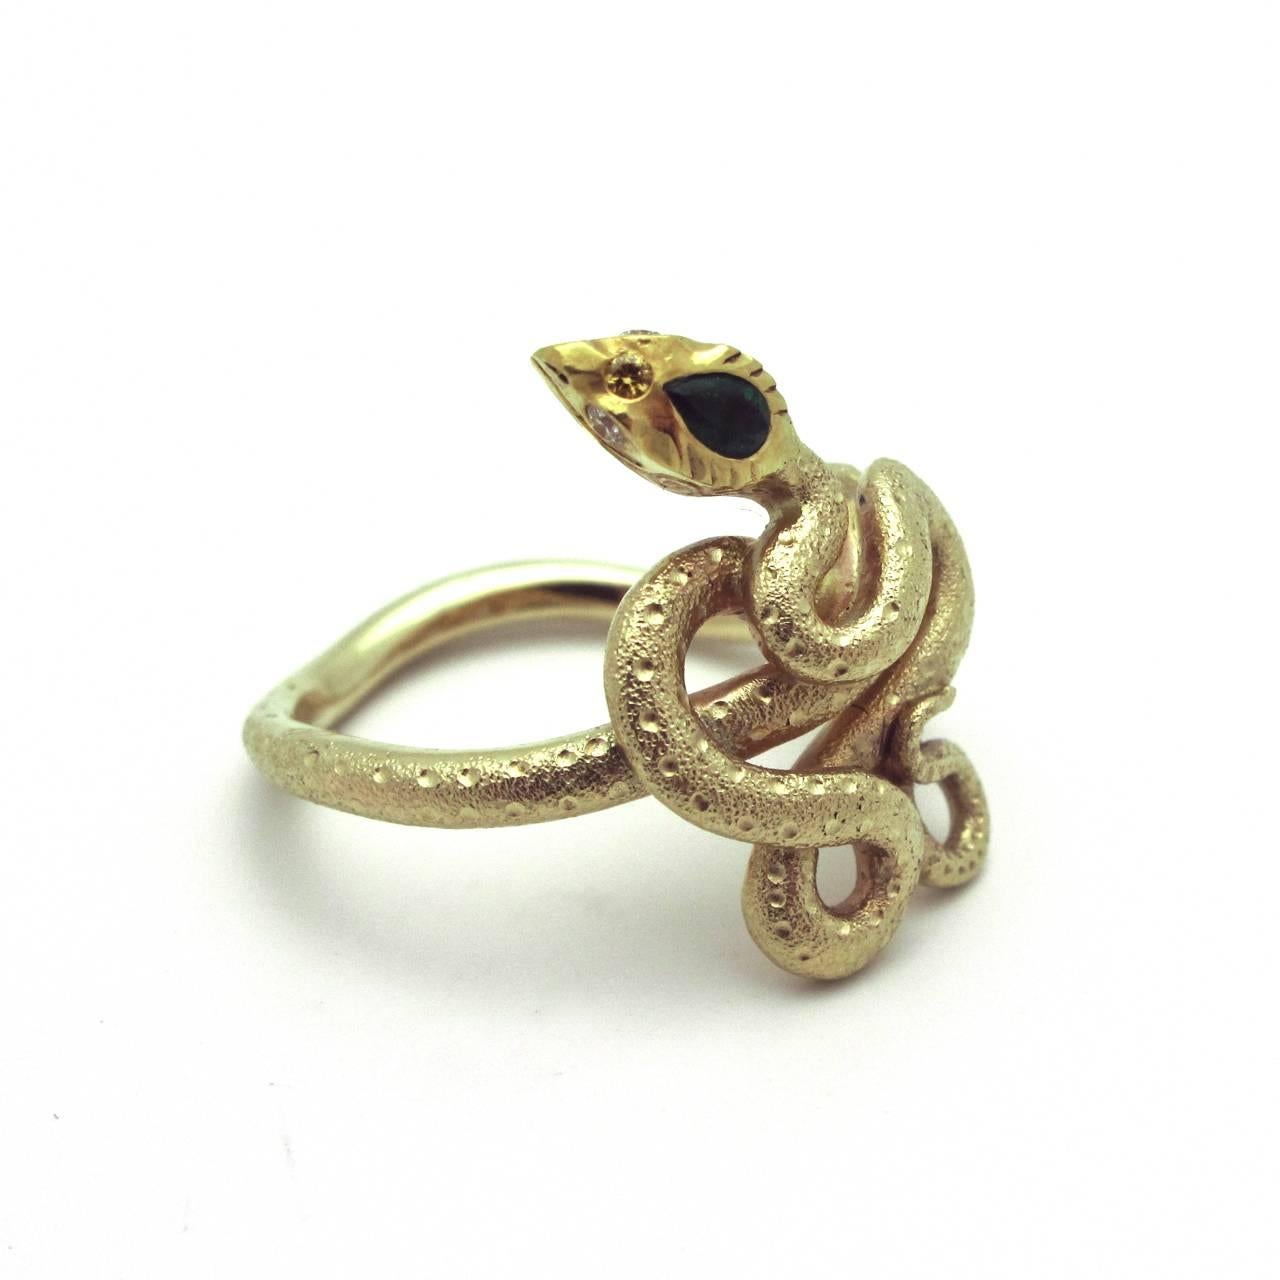 Texturierter Schlangenring aus 14k Gold mit einem Kopf aus 18k Gold und Smaragd mit Diamantaugen. Ein tolles mythisches Stück mit stechenden Augen. Es ist dramatisch und fesselnd.